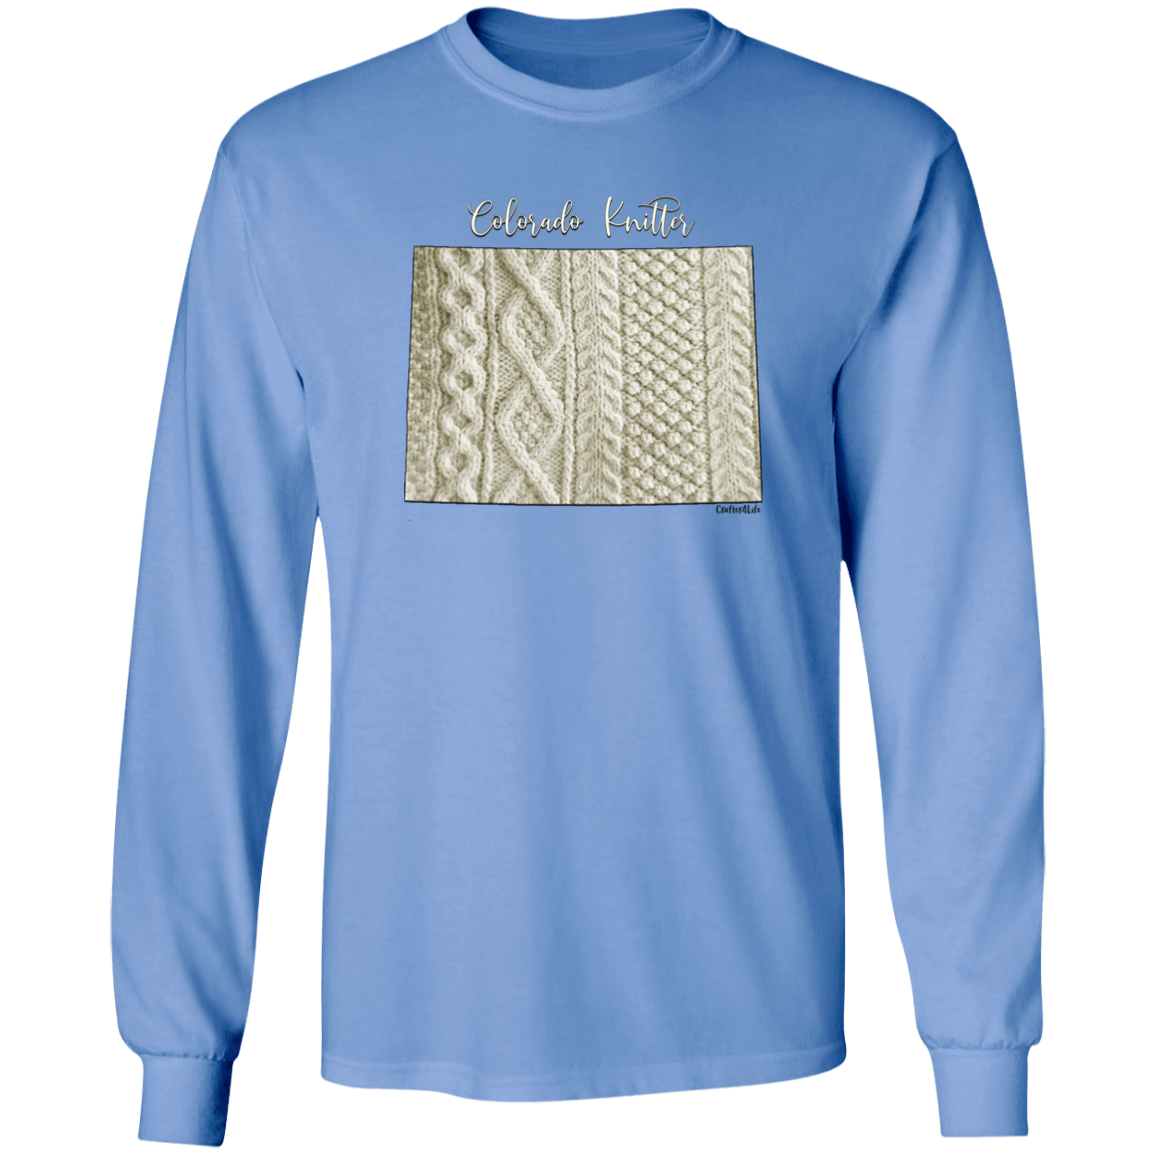 Colorado Knitter LS Ultra Cotton T-Shirt